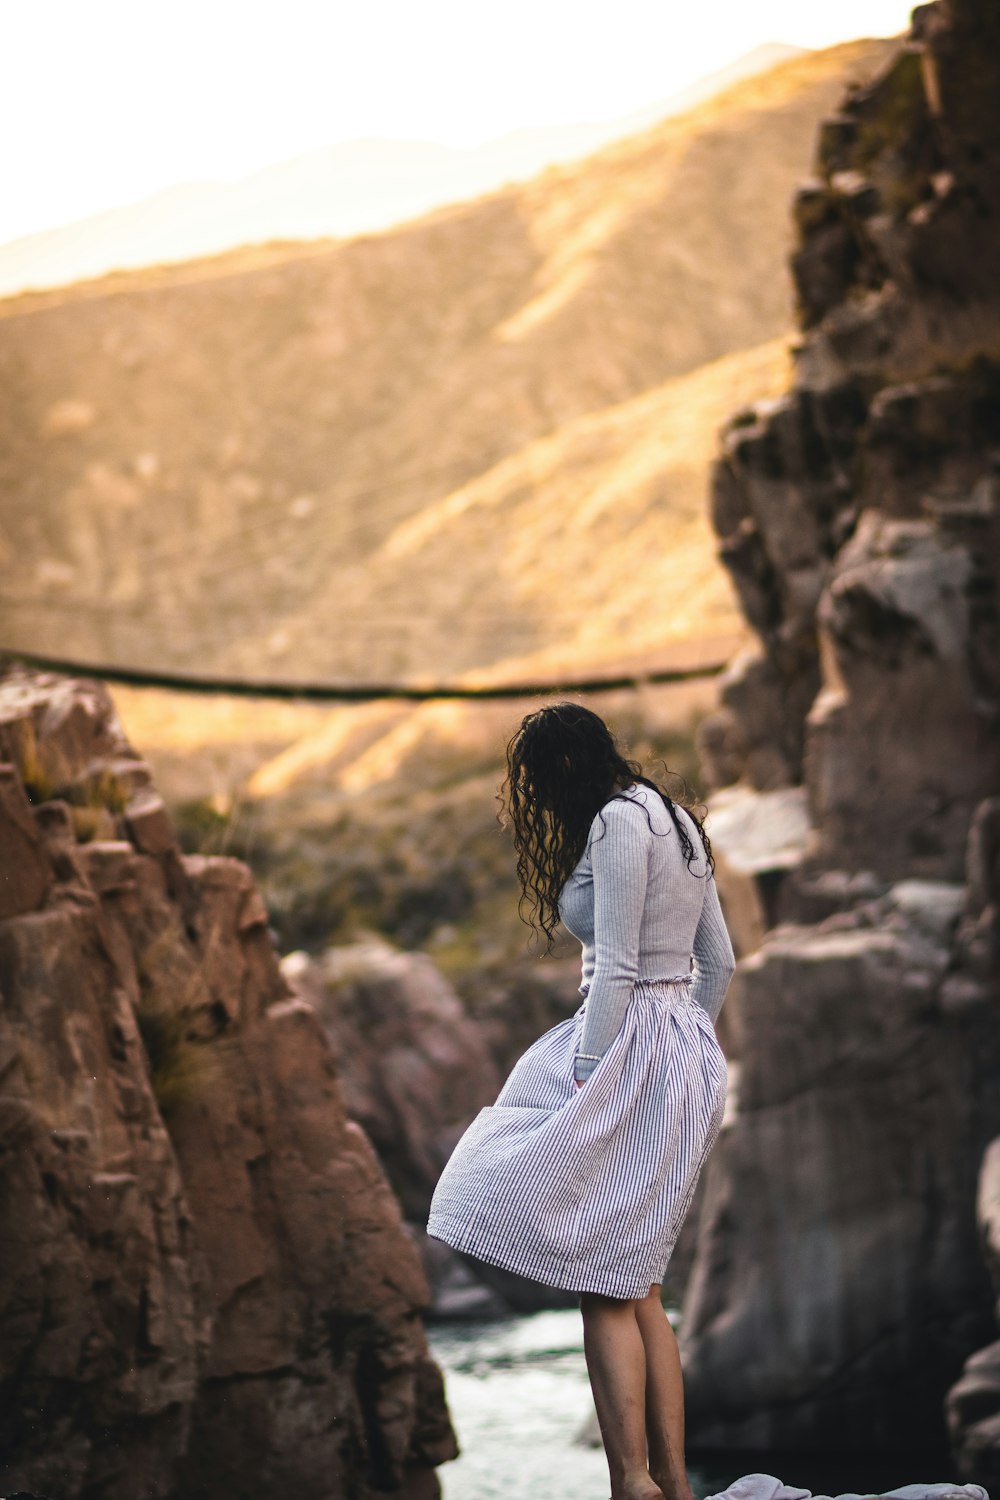 白と黒の縞模様の長袖シャツを着た女性が昼間、茶色の岩の上に立っている